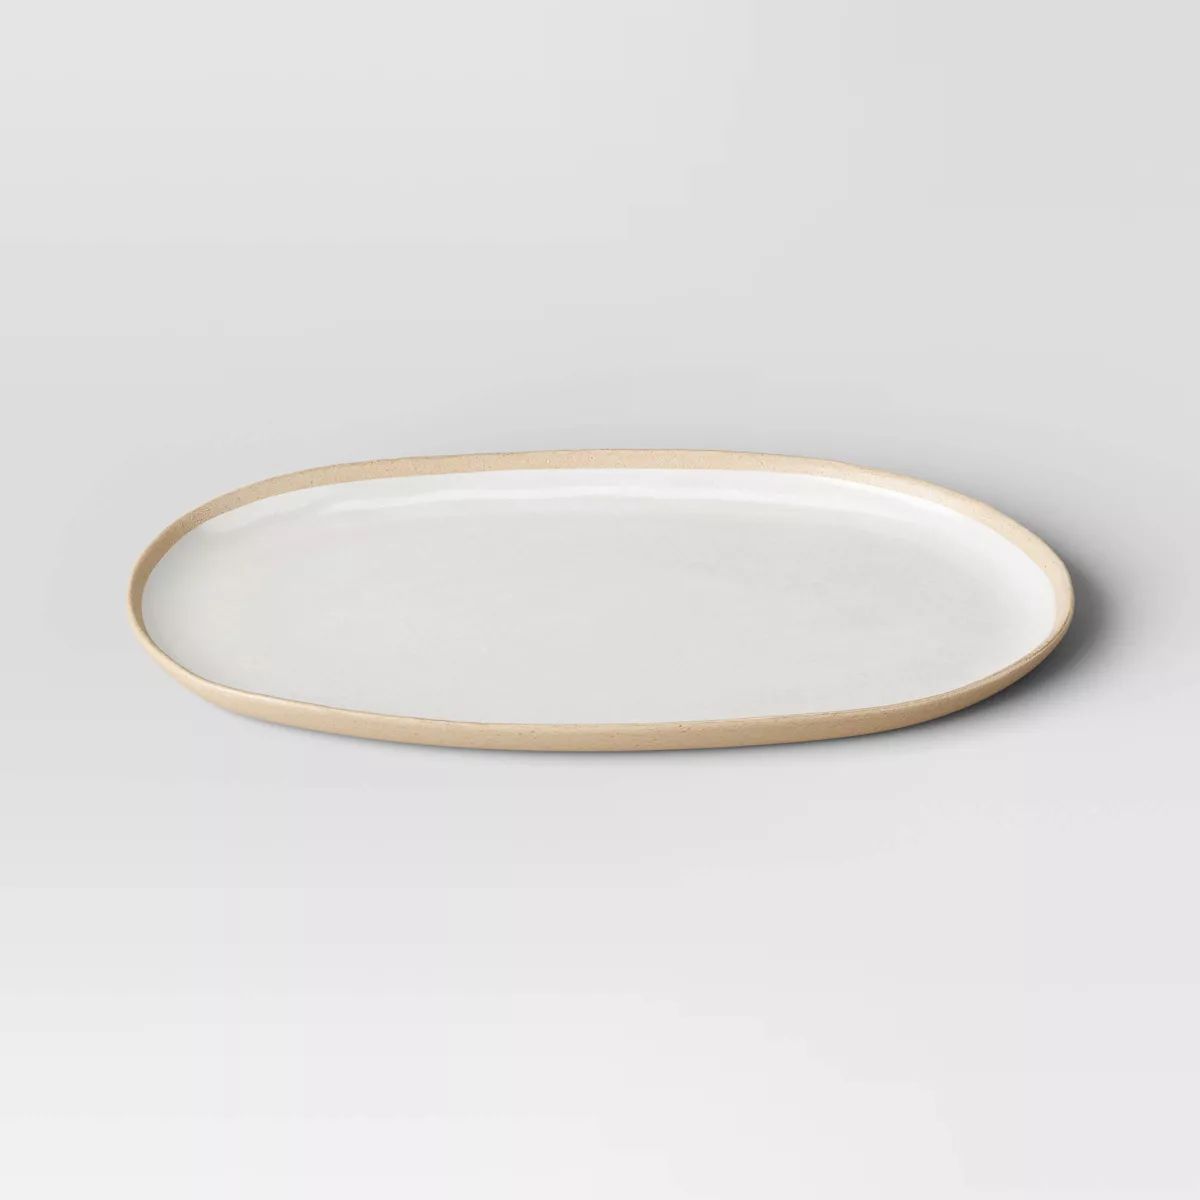 Small Melamine Oval Serving Platter Ivory - Threshold™ | Target